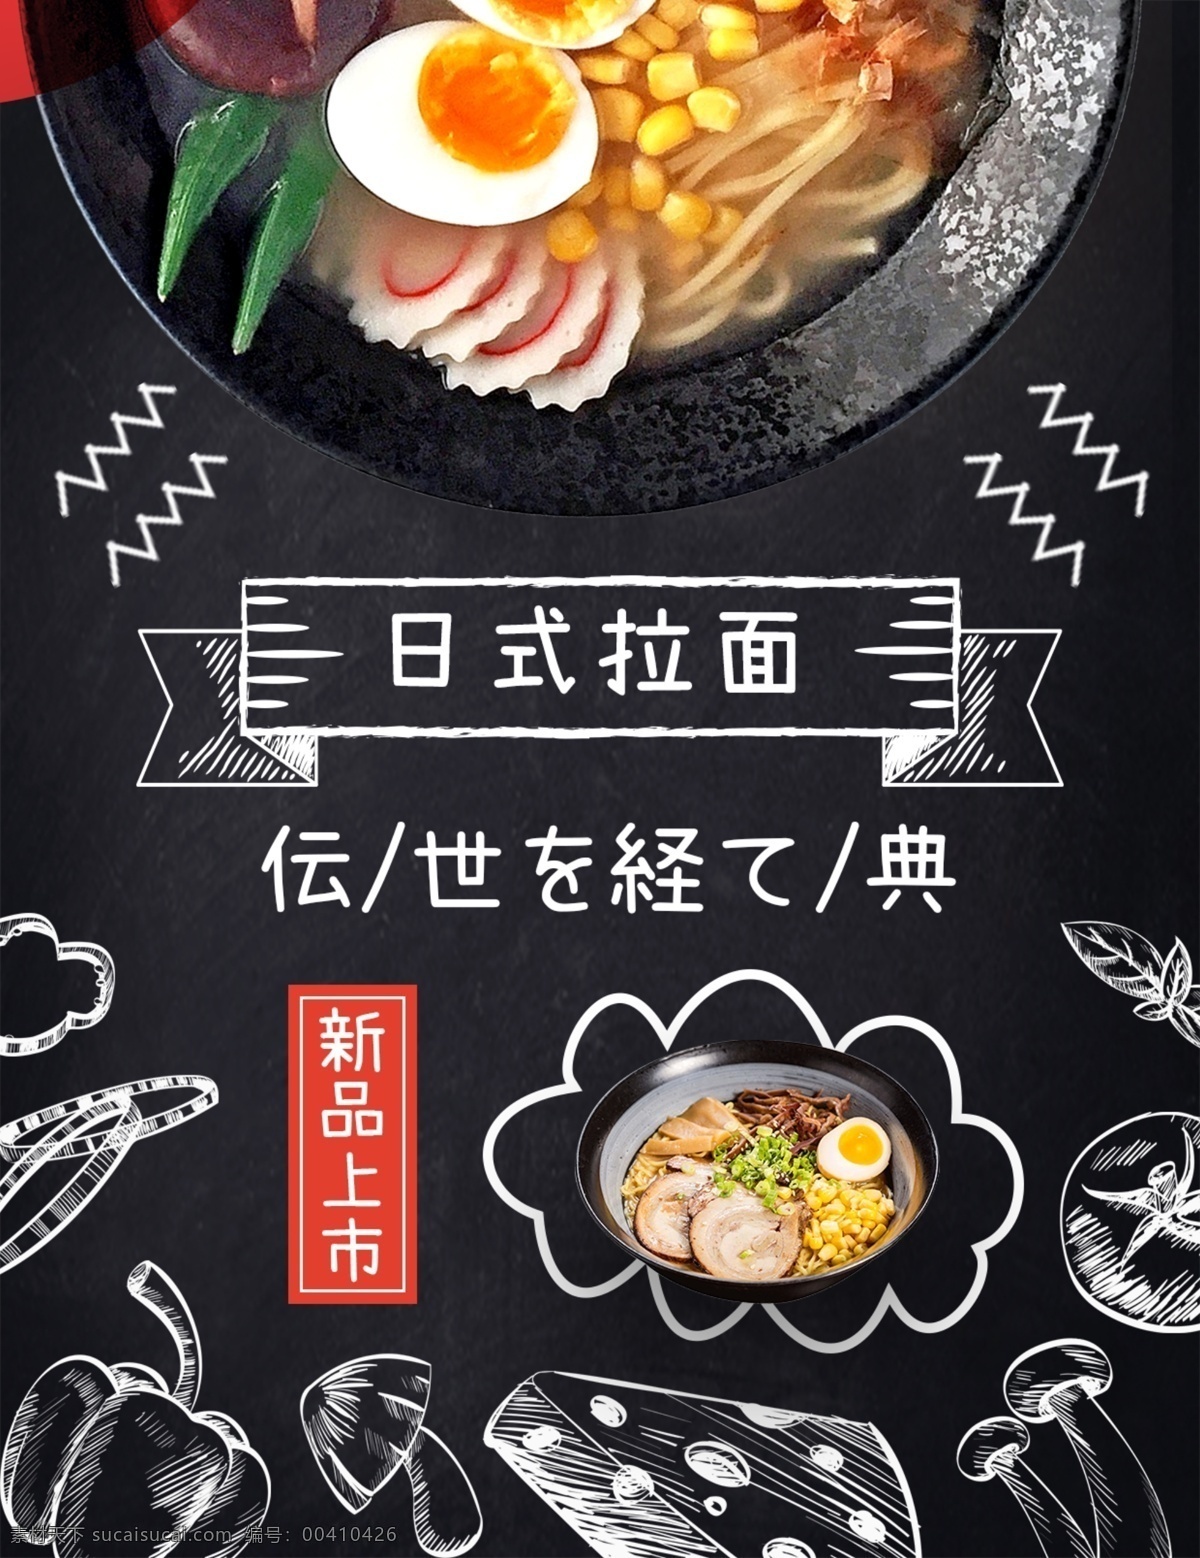 黑色 背景 简约 奢华 日本 餐厅 菜谱 美食 免费 模板 拉面